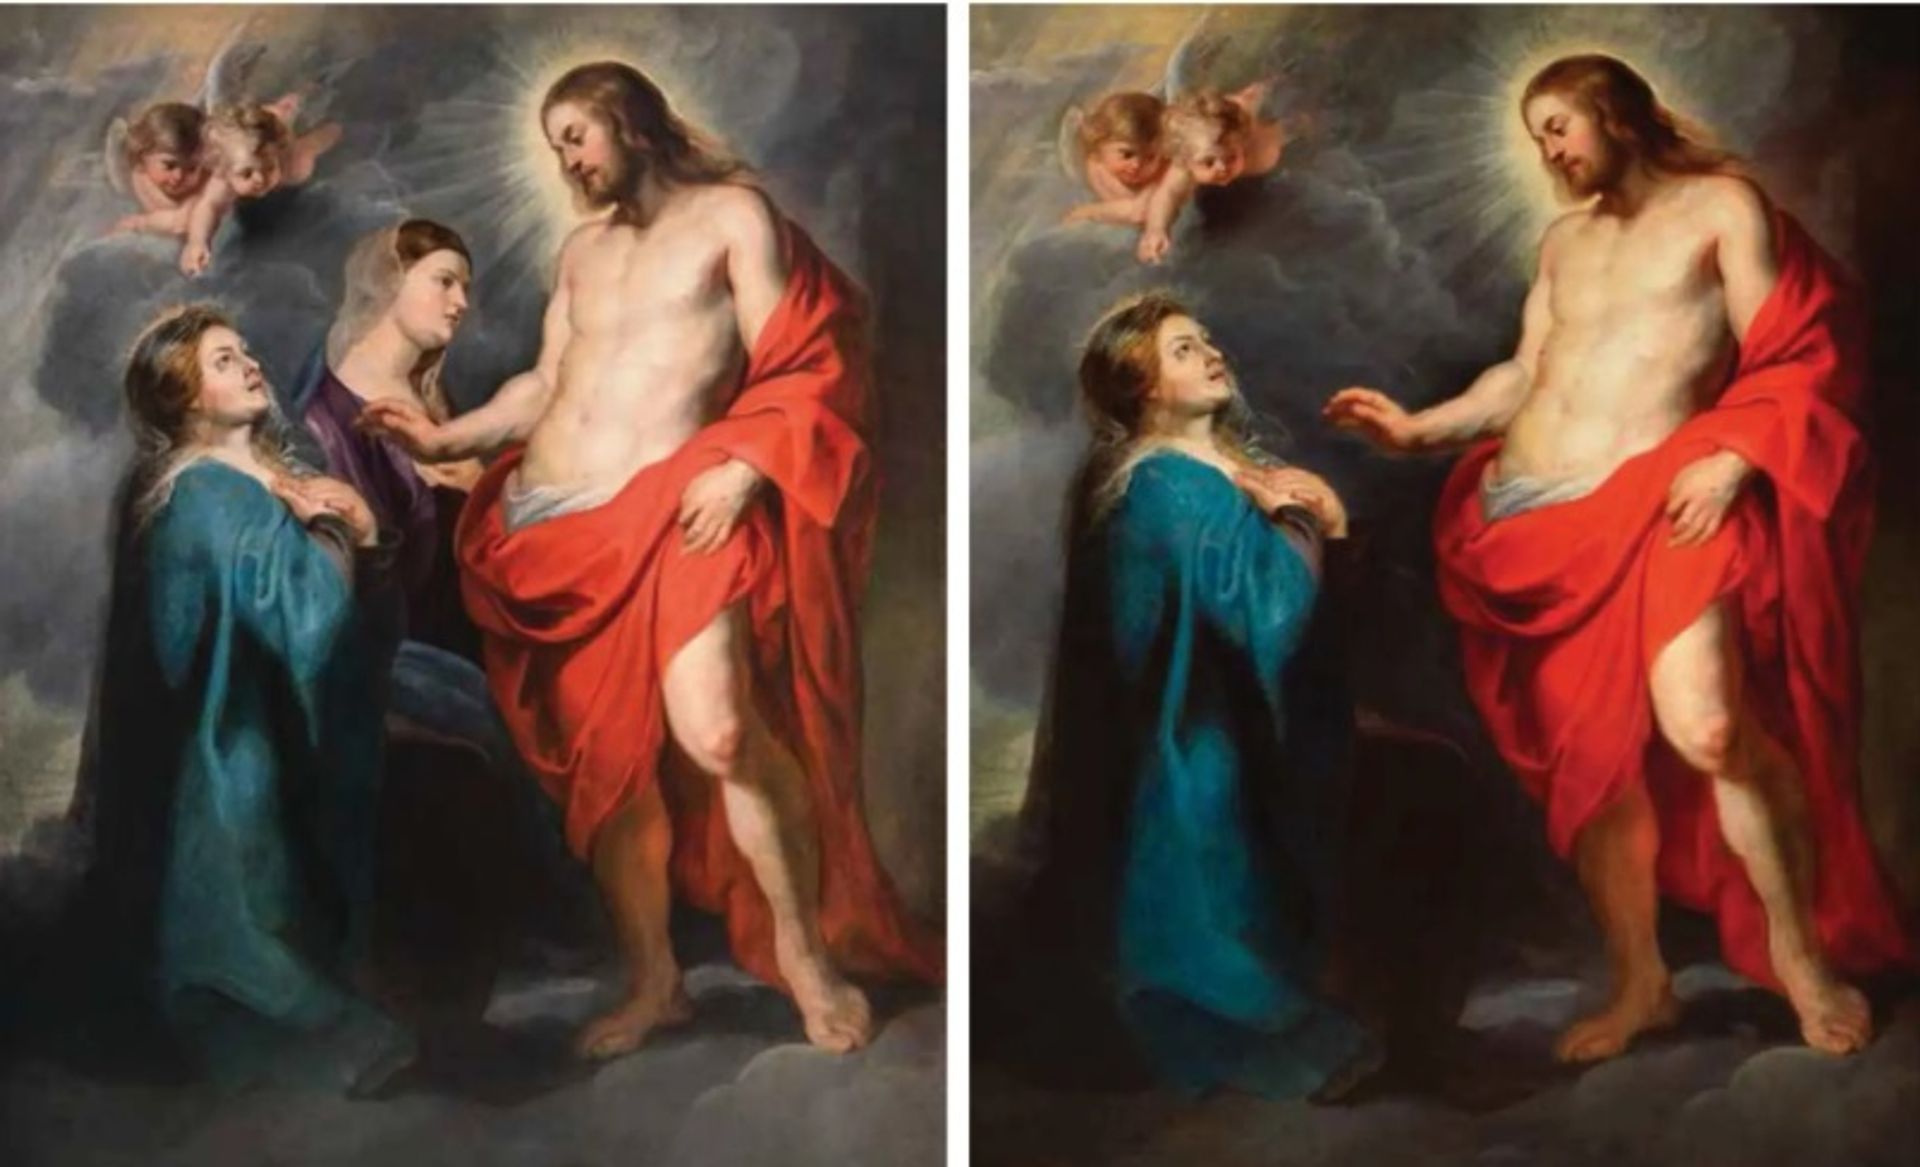 ישו שקם לתחייה מופיע לאמו (בסביבות 1612-1616) על ידי פיטר פול רובנס, לפני השחזור ב-2015 עם מדונה אחת בלבד (מימין) ואחרי שיקום עם שתי המדונות מוצגות (משמאל).

תמונות: Carabinieri Tutela Patrimonio Culturale